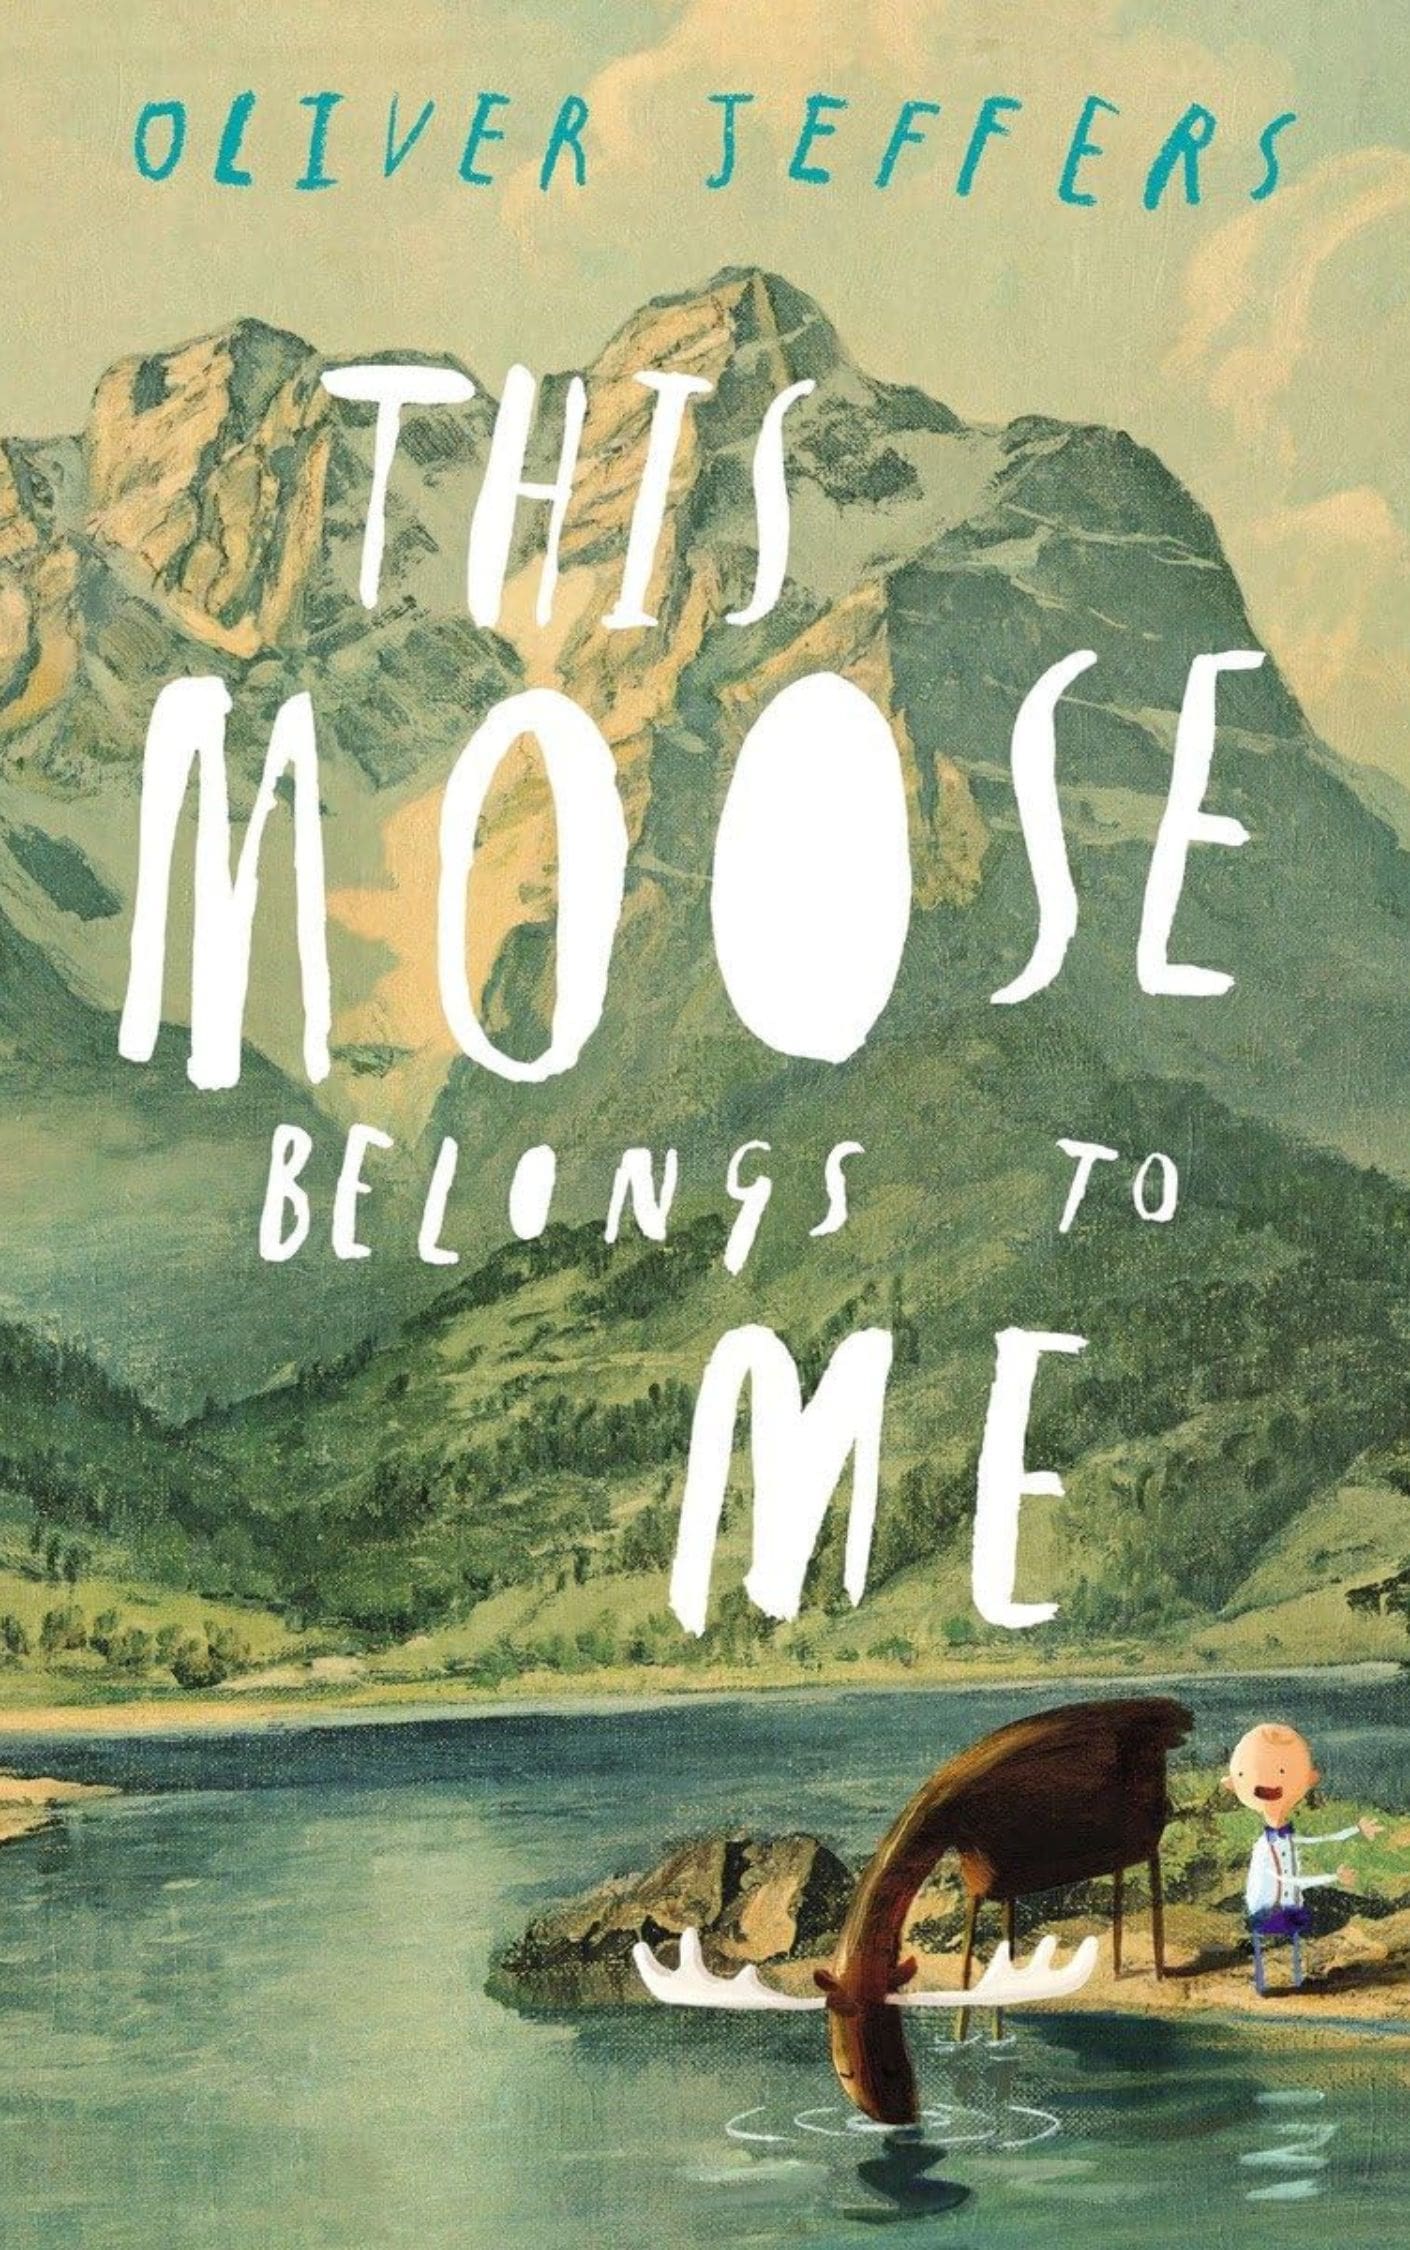 This Moose belongs To me